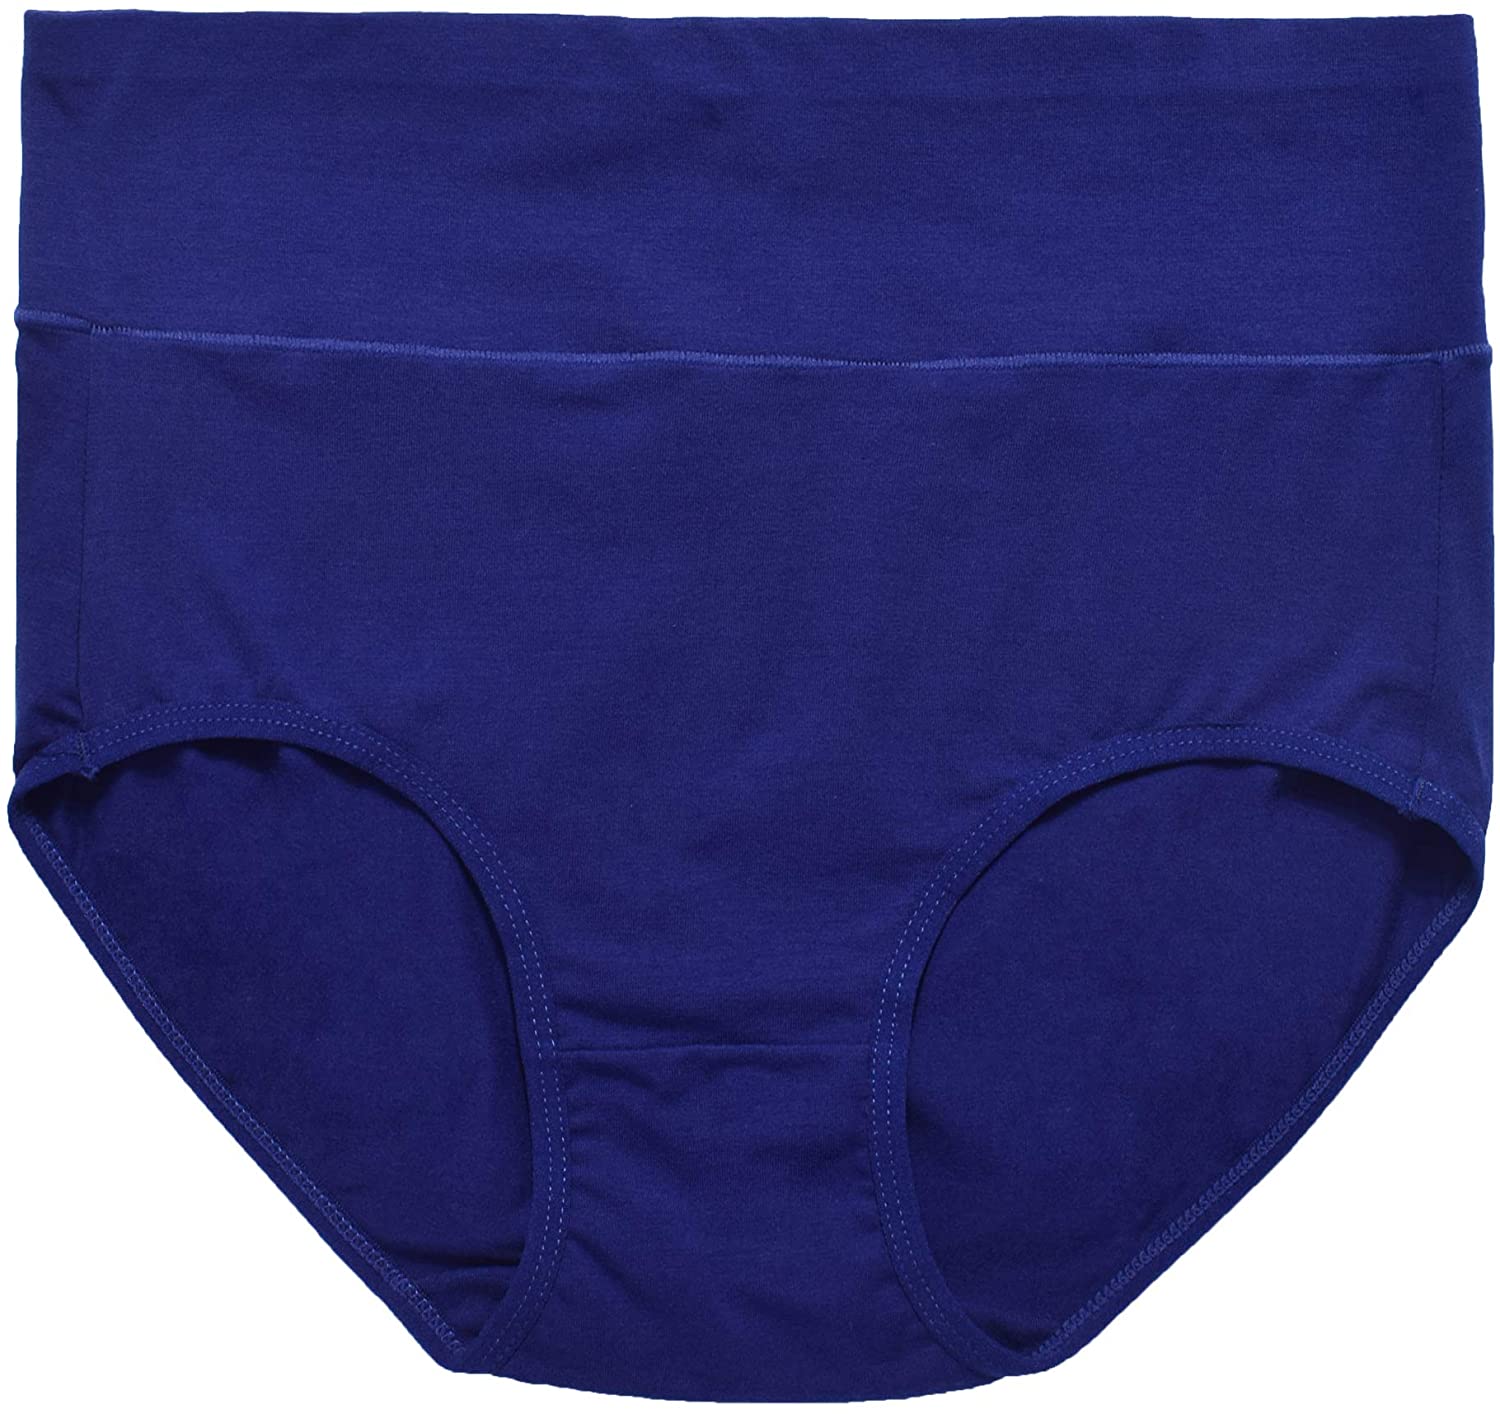 Annenmy Women's High Waist Cotton Underwear Soft Brief, Black, Size XX ...